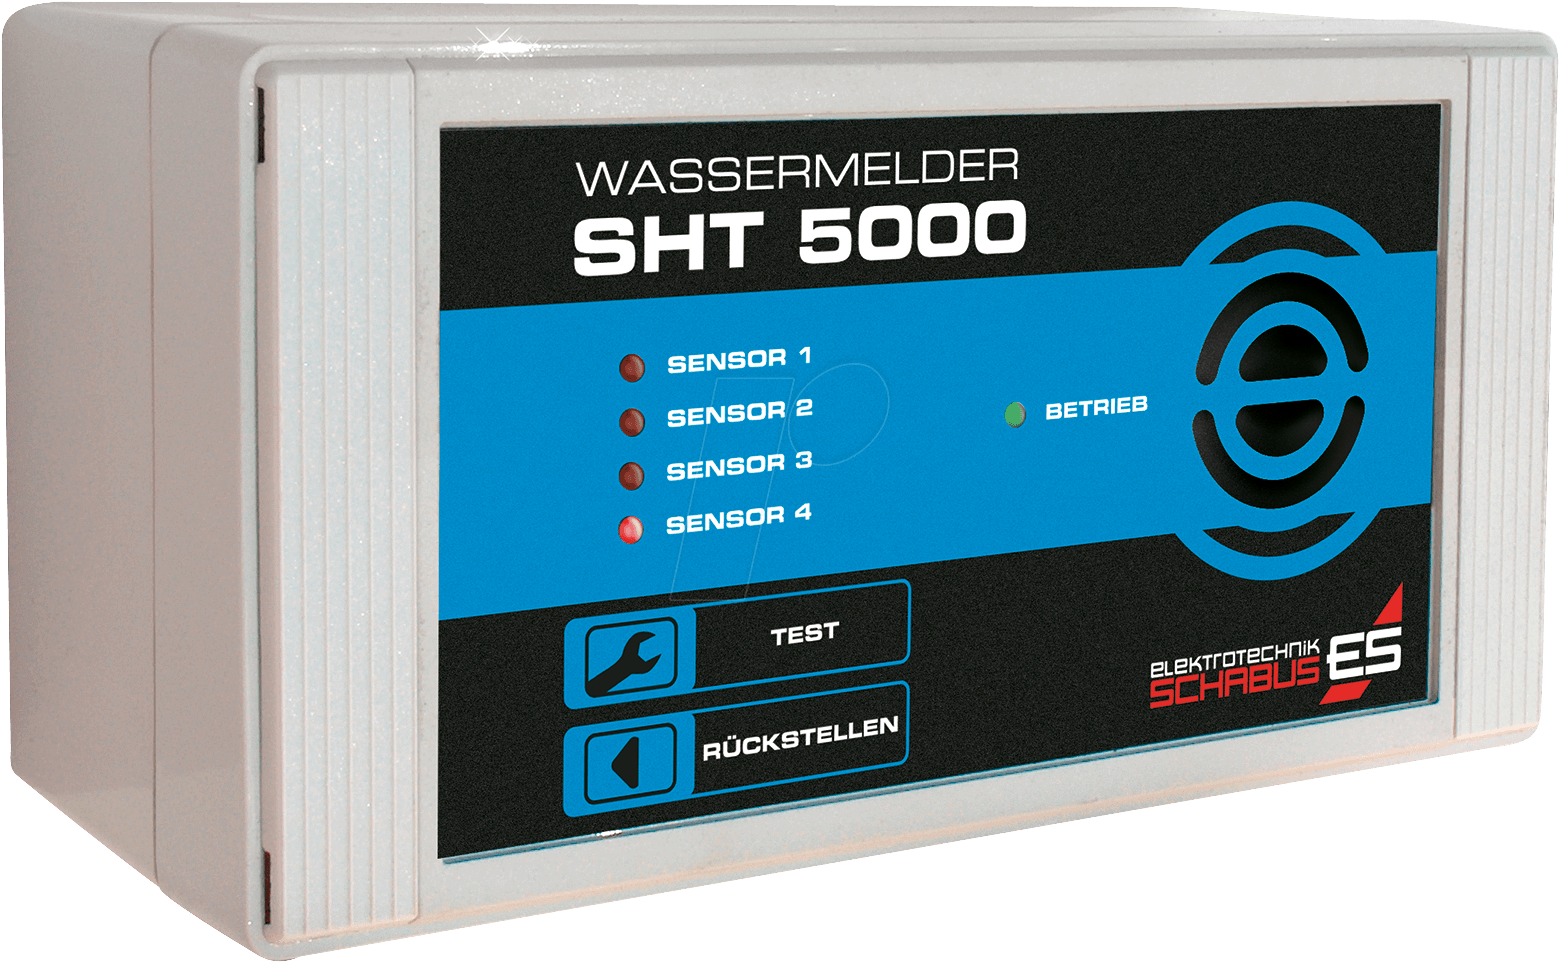 SHT 5000 - Wassermelder für externe Sensoren von SCHABUS